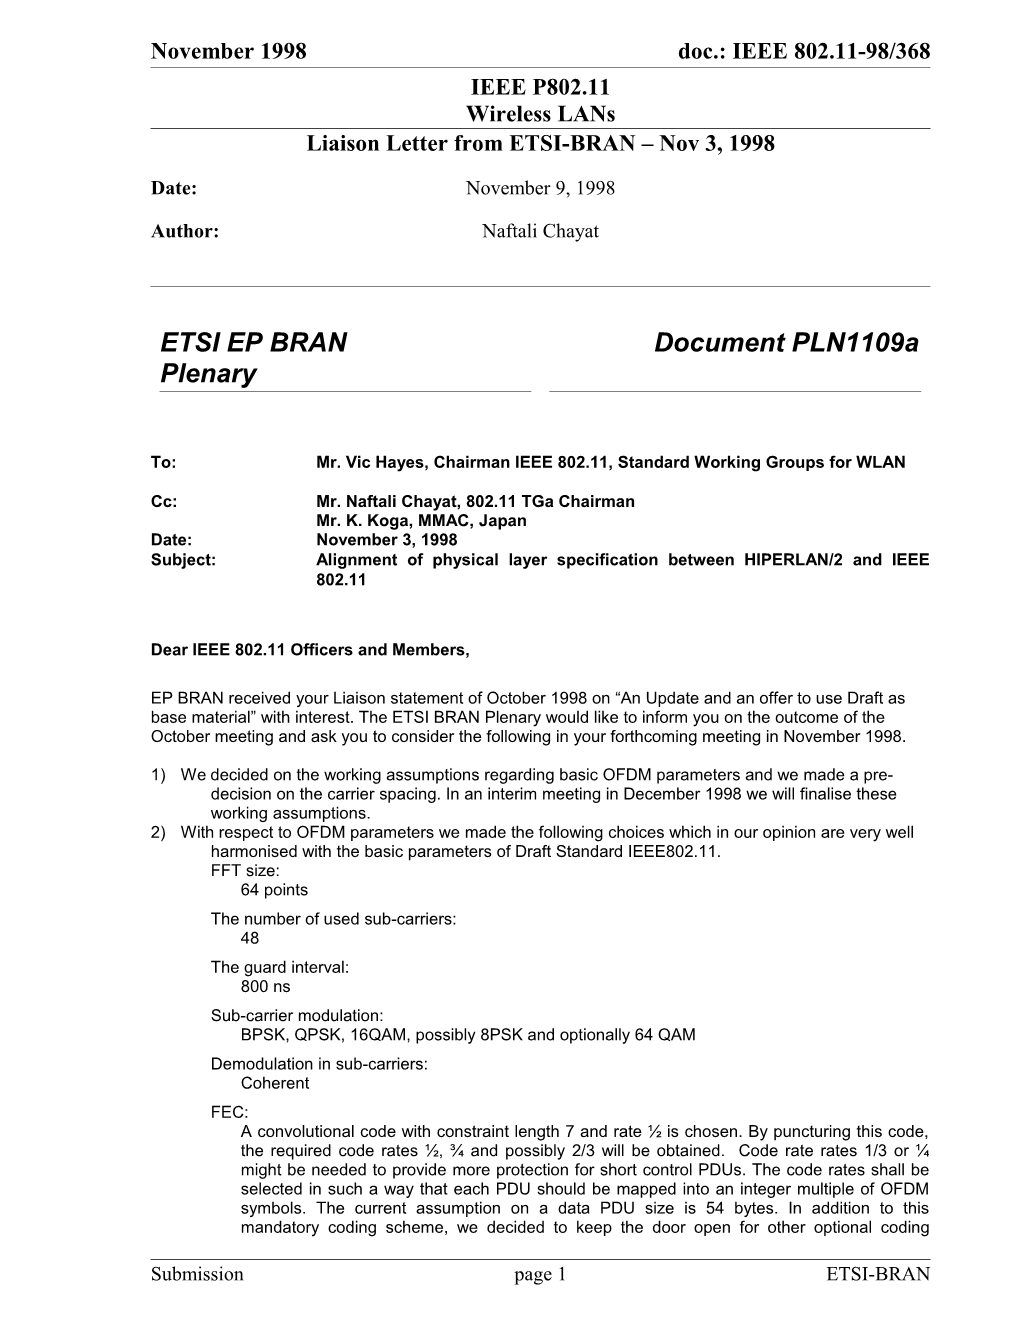 Liaison Letter from ETSI-BRAN Nov 3, 1998